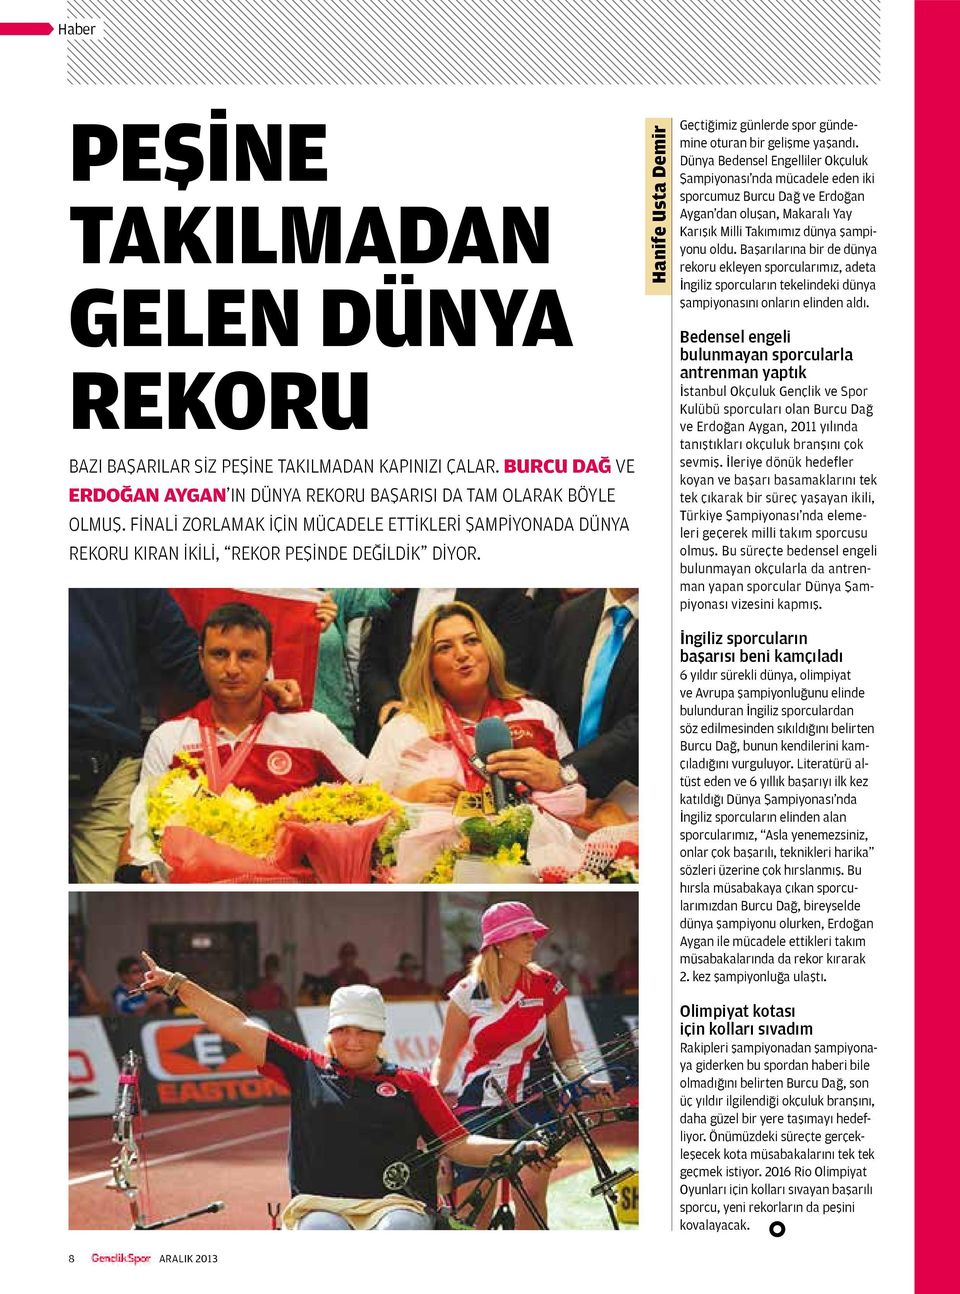 Dünya Bedensel Engelliler Okçuluk Şampiyonası nda mücadele eden iki sporcumuz Burcu Dağ ve Erdoğan Aygan dan oluşan, Makaralı Yay Karışık Milli Takımımız dünya şampiyonu oldu.